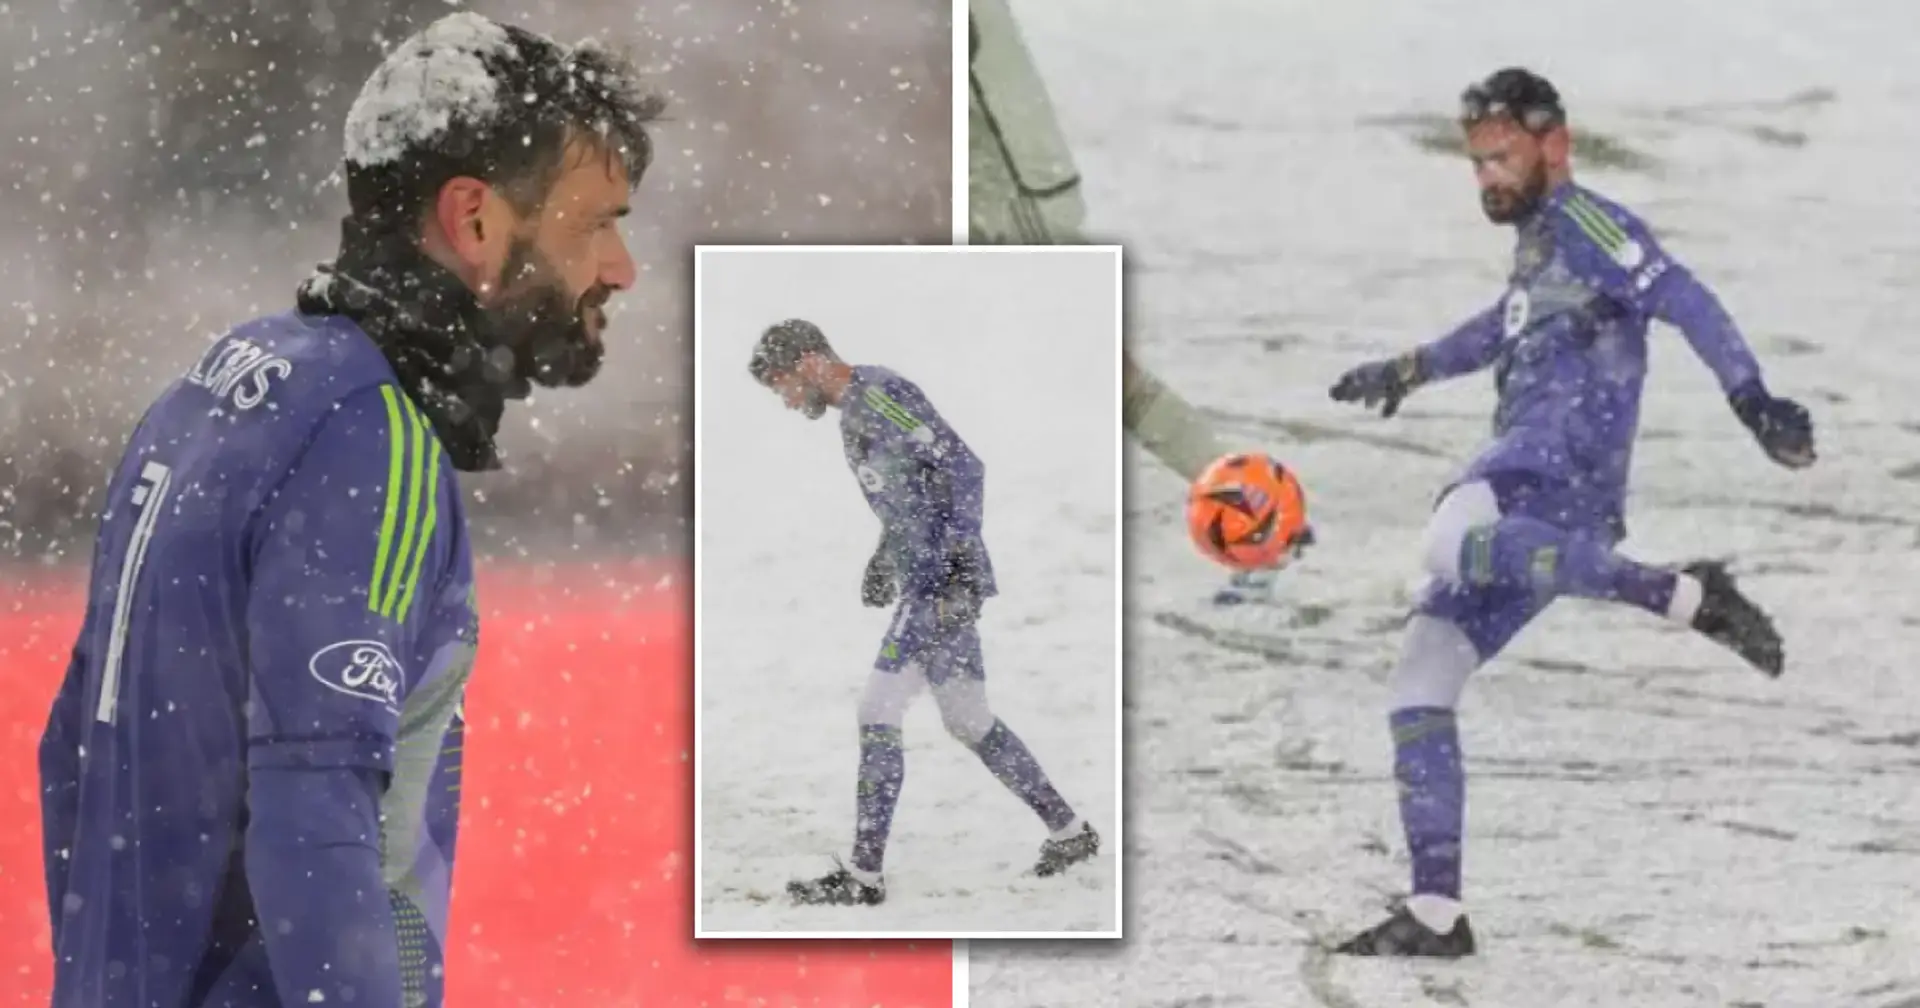 "C'était une mascarade absolue" : Hugo Lloris grelotte pendant le match du LAFC en raison des conditions hivernales difficiles